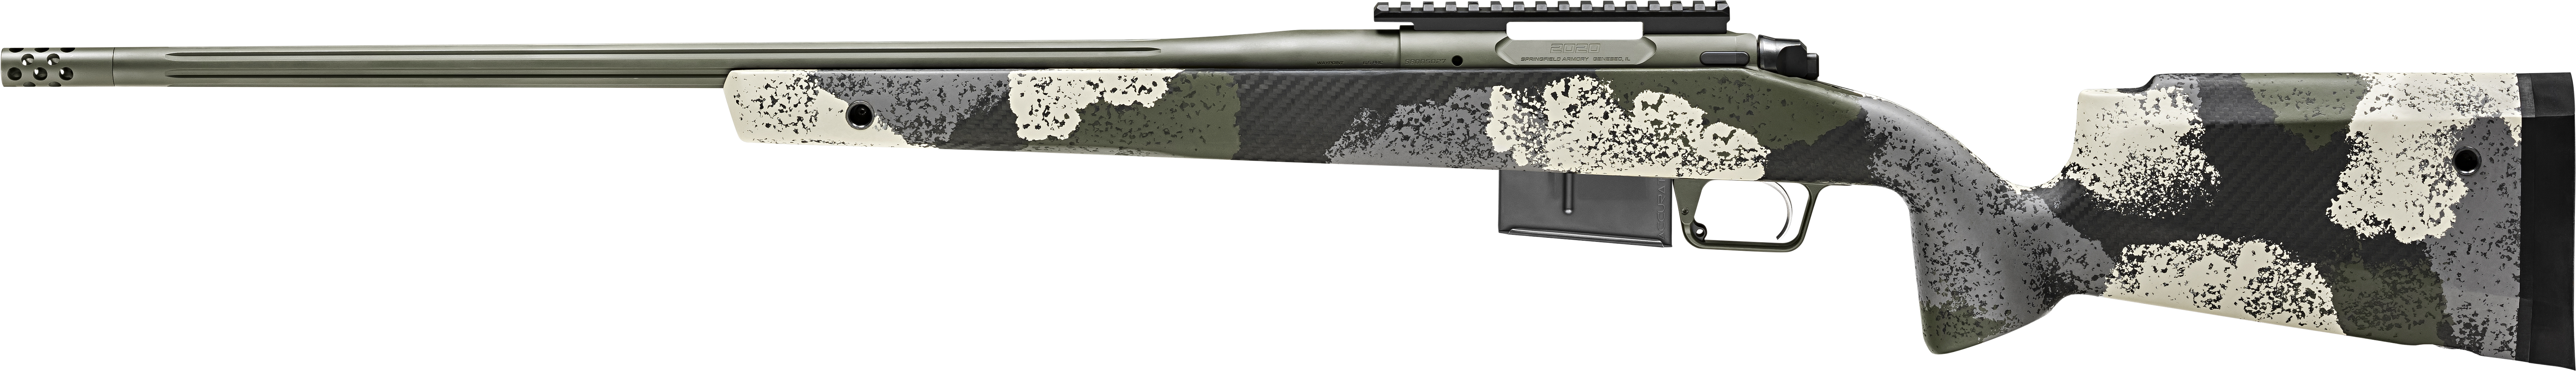 SPR 2020WP 6.5PRC 24 EVGRN 3RD - Long Guns